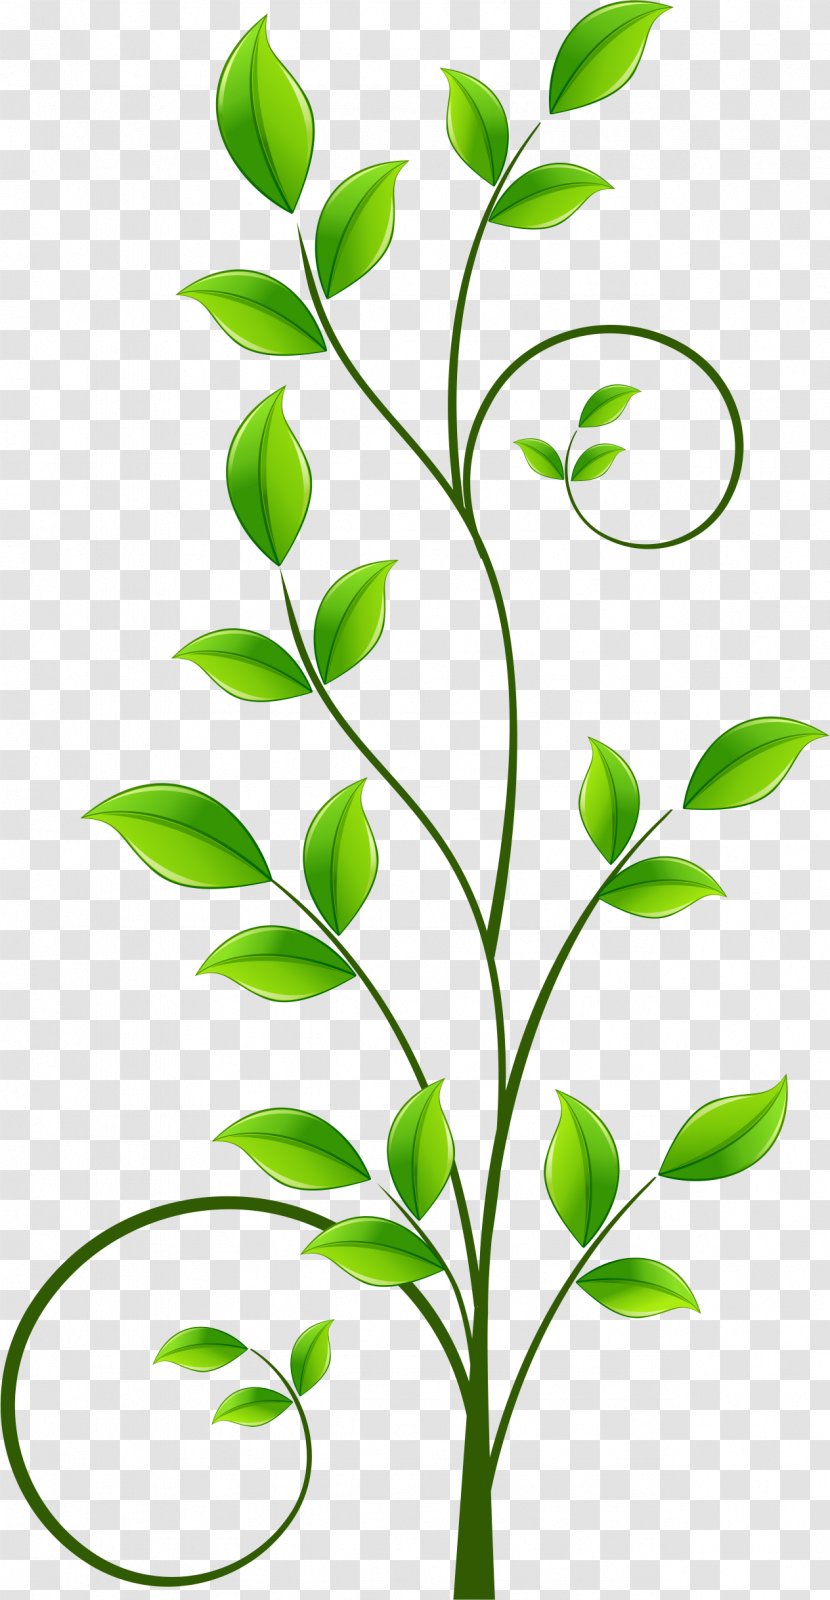 Download Illustration - Flora - Green Leaf Pattern Transparent PNG